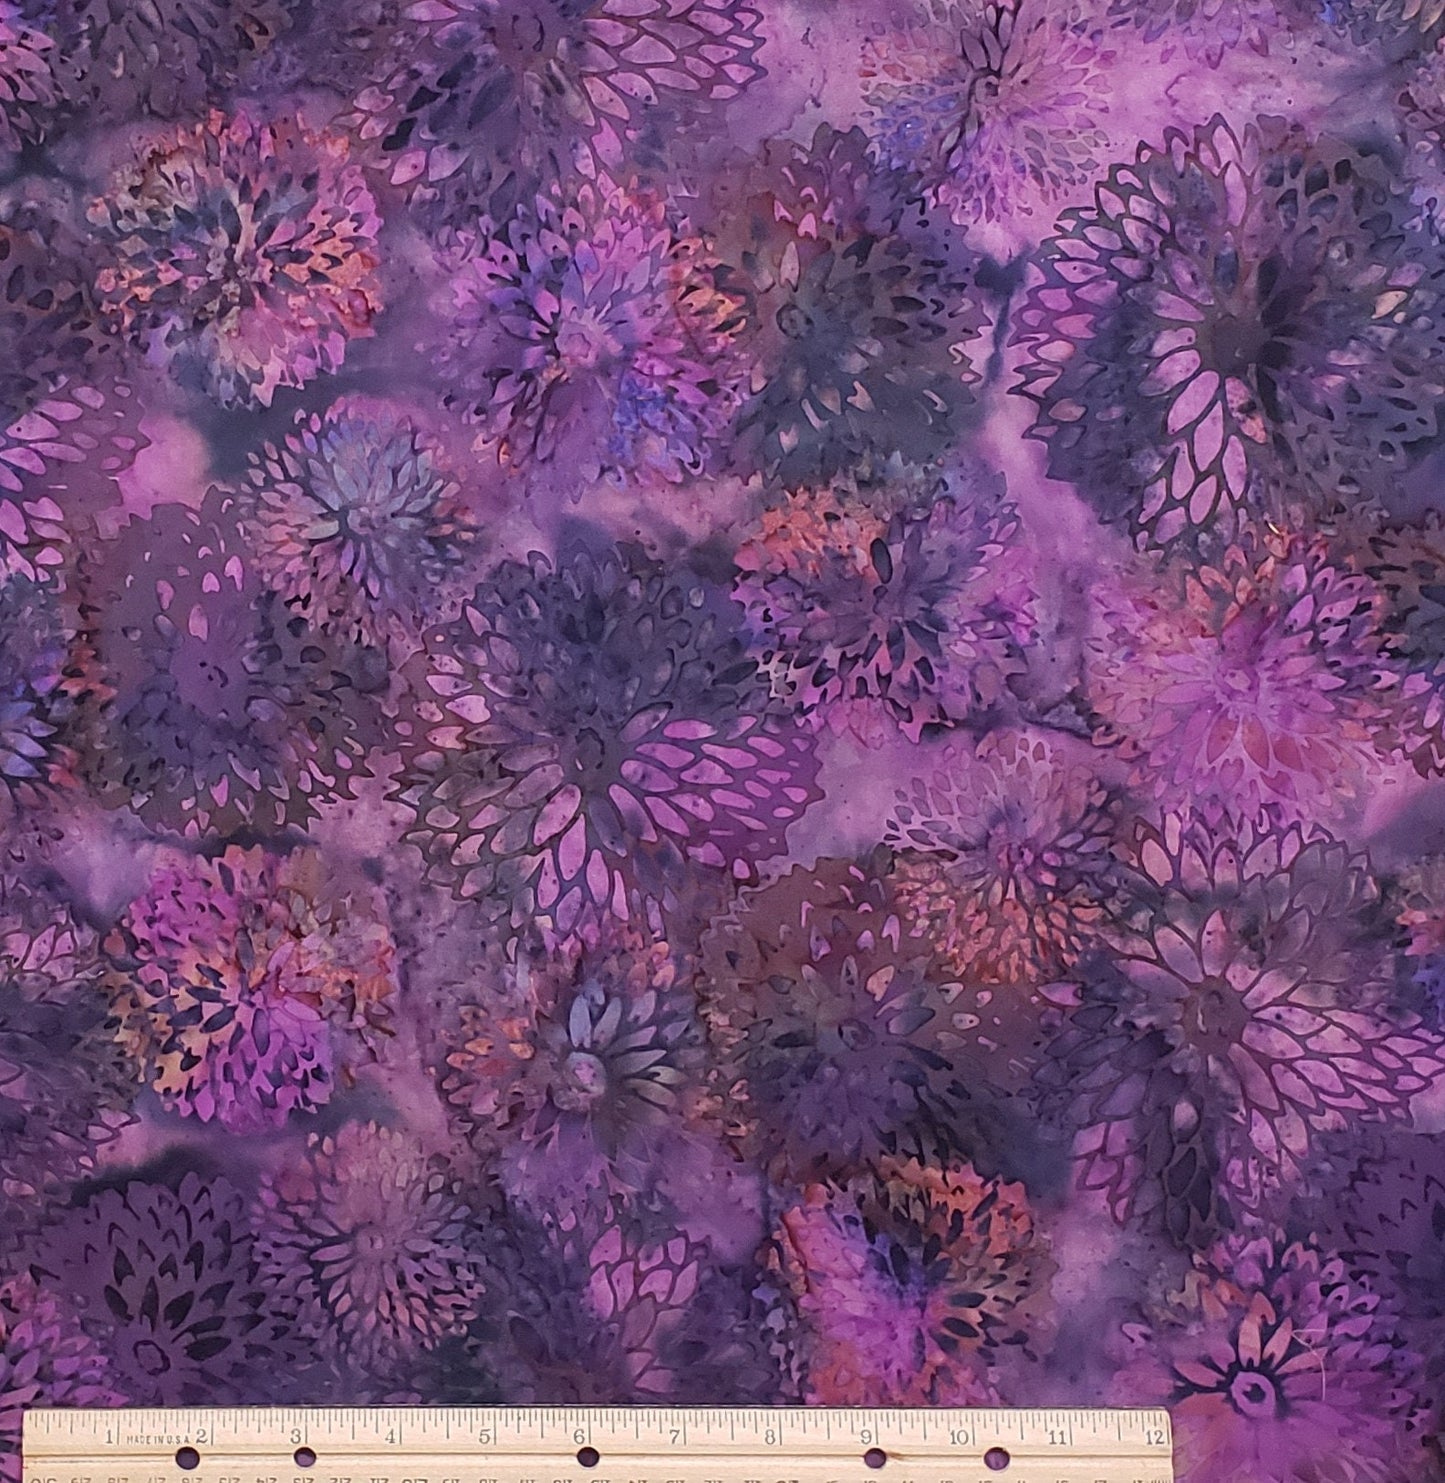 BATIK - Purple / Magenta / Green / Orange "Chrysanthemum" Pattern Fabric